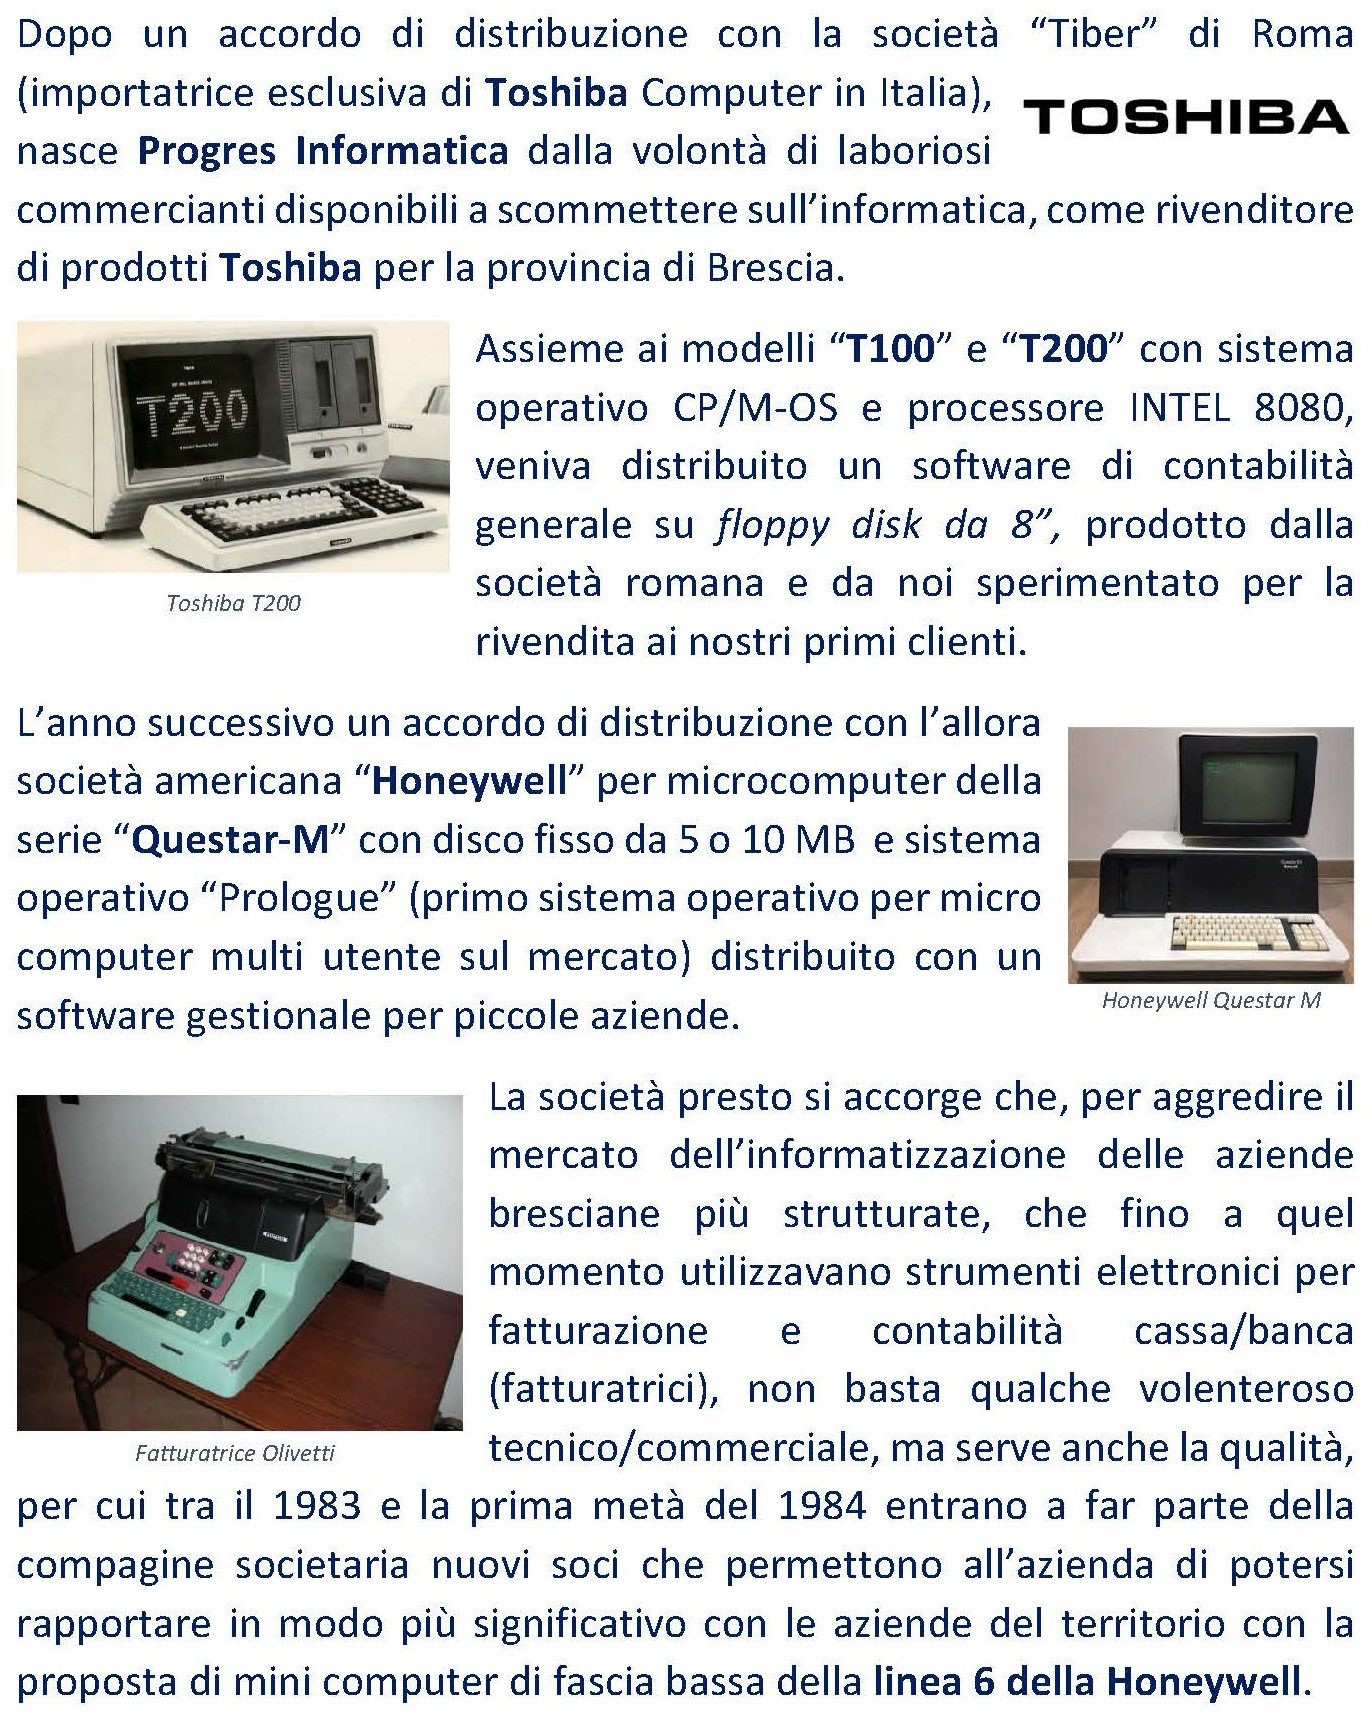 Dopo un accordo di distribuzione con la società “Tiber” di Roma (importatrice esclusiva di Toshiba Computer in Italia), nasce Progres Informatica dalla volontà di laboriosi commercianti disponibili a scommettere sull’informatica, come rivenditore di prodotti Toshiba per la provincia di Brescia. Assieme ai modelli “T100” e “T200” con sistema operativo CP/M-OS e processore INTEL 8080, veniva distribuito un software di contabilità generale su floppy disk da 8”, prodotto dalla società romana e da noi sperimentato per la rivendita ai nostri primi clienti. L’anno successivo un accordo di distribuzione con l’allora società americana “Honeywell” per microcomputer della serie “Questar-M” con disco fisso da 5 o 10 MB e sistema operativo “Prologue” (primo sistema operativo per micro computer multi utente sul mercato) distribuito con un software gestionale per piccole aziende. La società presto si accorge che, per aggredire il mercato dell’informatizzazione delle aziende bresciane più strutturate, che fino a quel momento utilizzavano strumenti elettronici per fatturazione e contabilità cassa/banca (fatturatrici), non basta qualche volenteroso tecnico/commerciale, ma serve anche la qualità, per cui tra il 1983 e la prima metà del 1984 entrano a far parte della compagine societaria nuovi soci che permettono all’azienda di potersi rapportare in modo più significativo con le aziende del territorio con la proposta di mini computer di fascia bassa della linea 6 della Honeywell. 